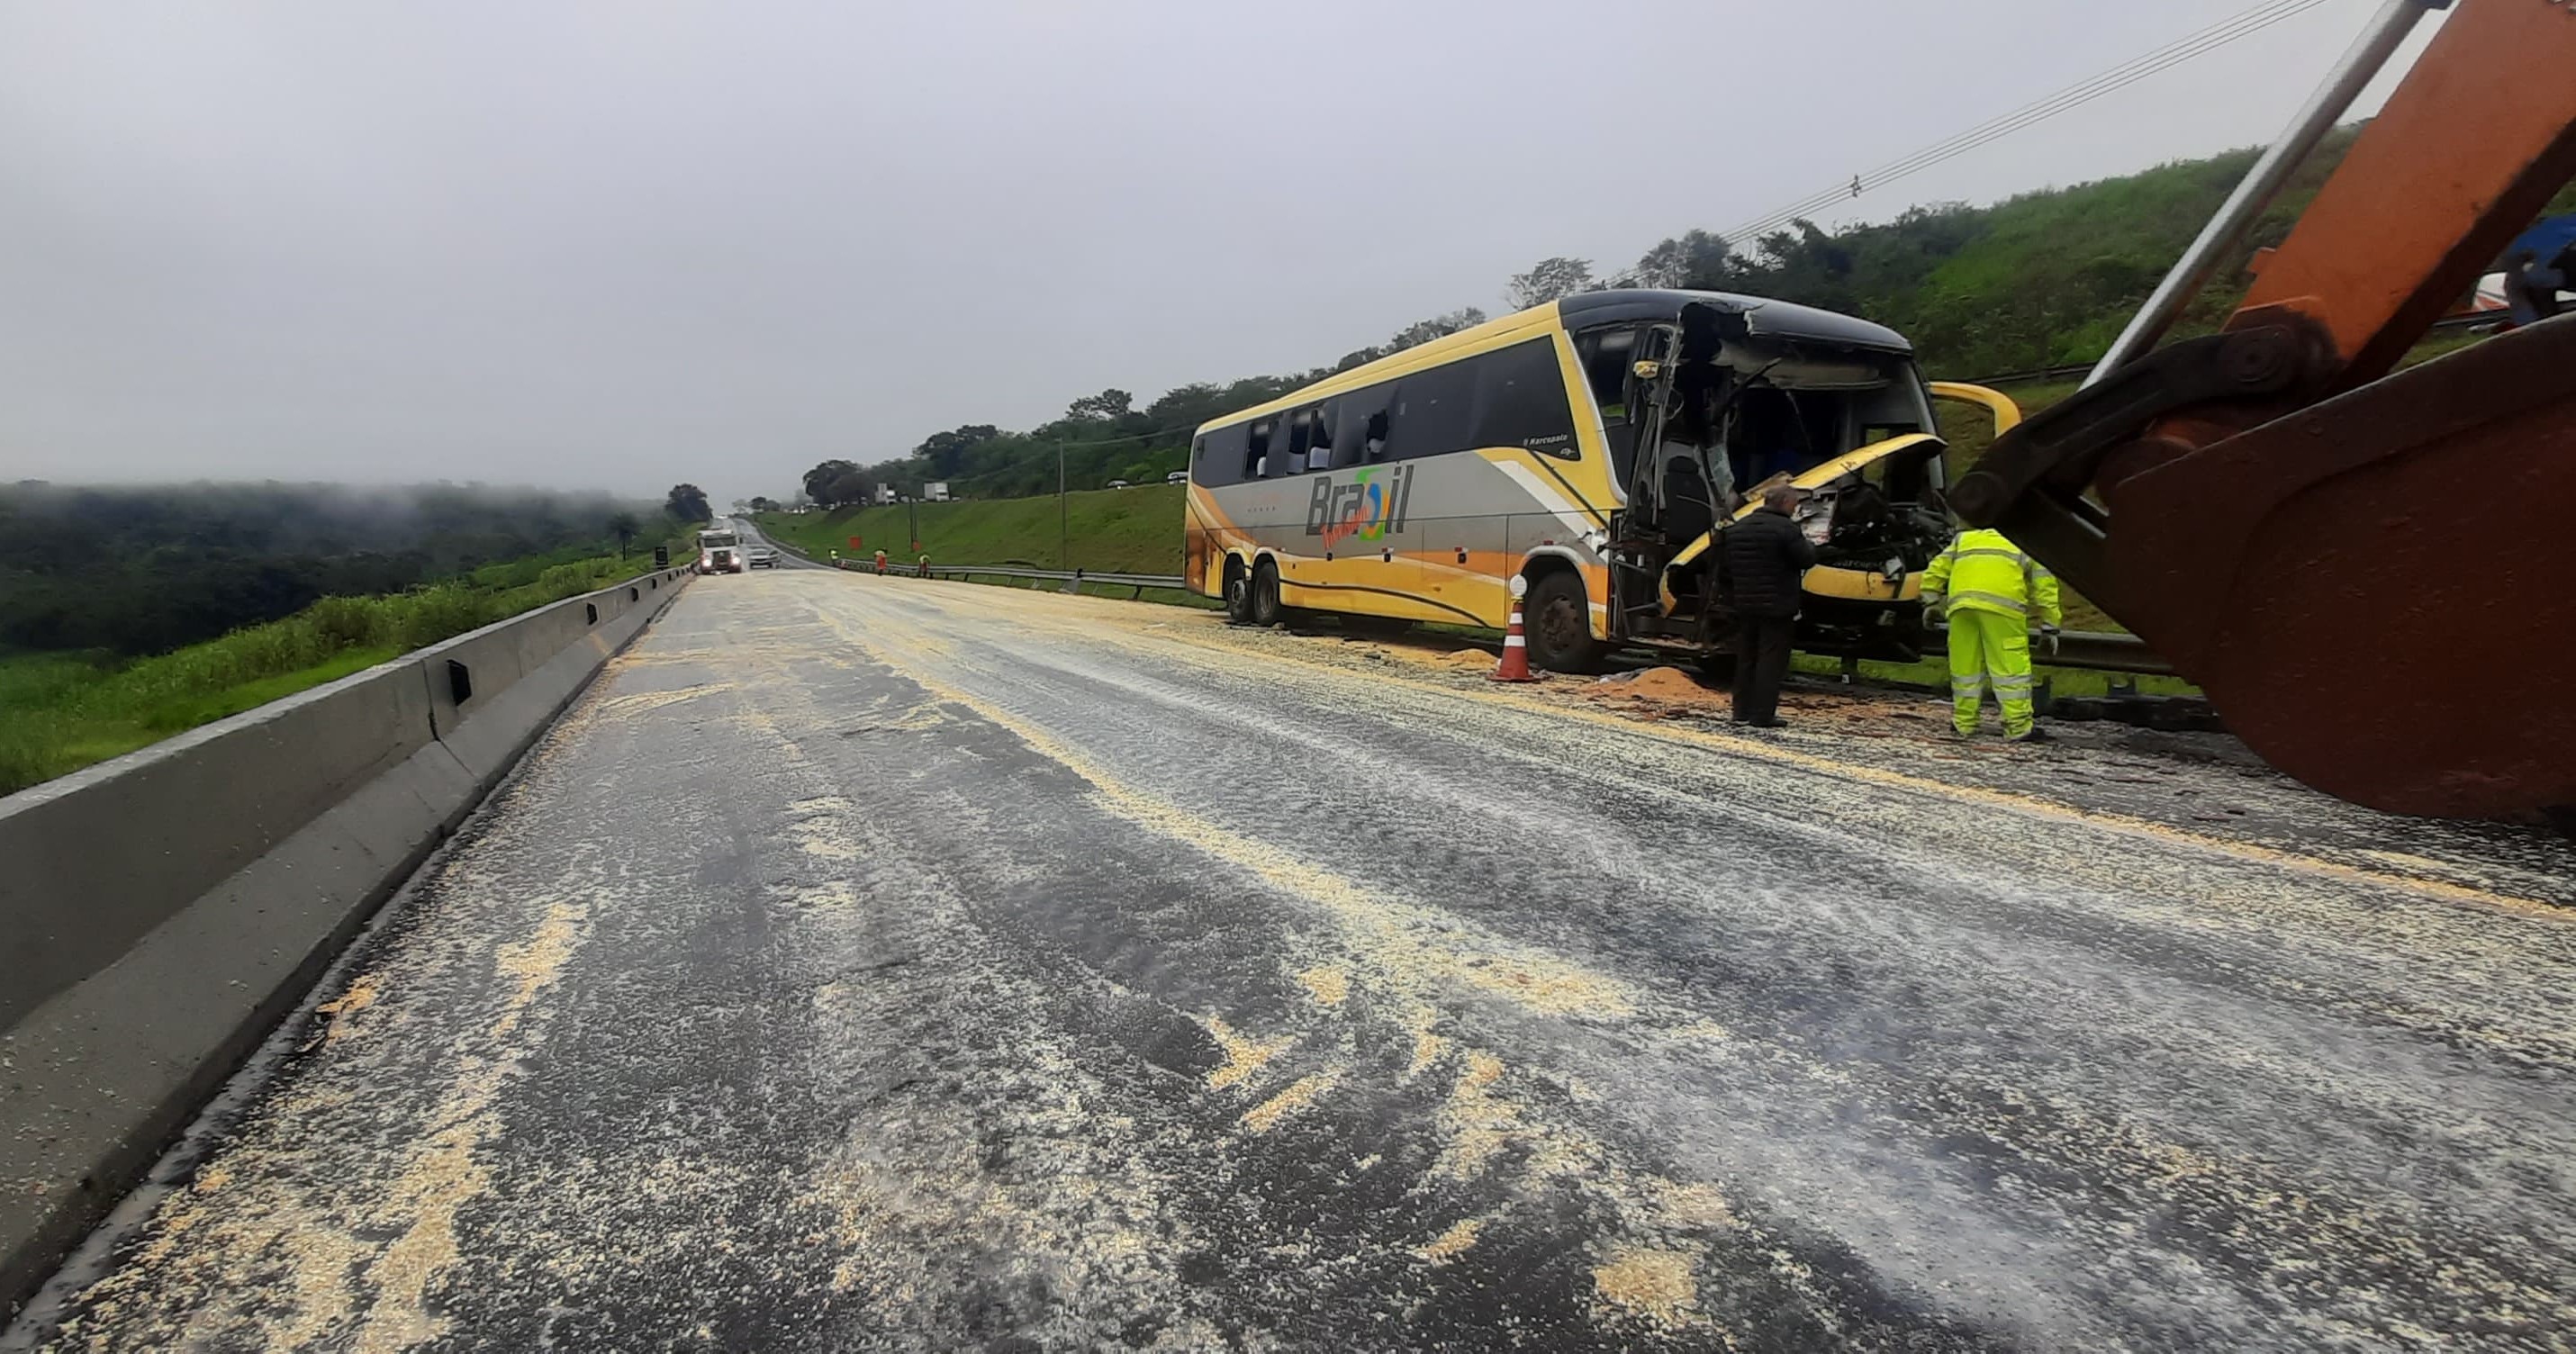 Acidente entre ônibus e carreta deixa 1 morto na SP-330 em Santa Rita do Passa Quatro; rodovia está interditada sentido capital